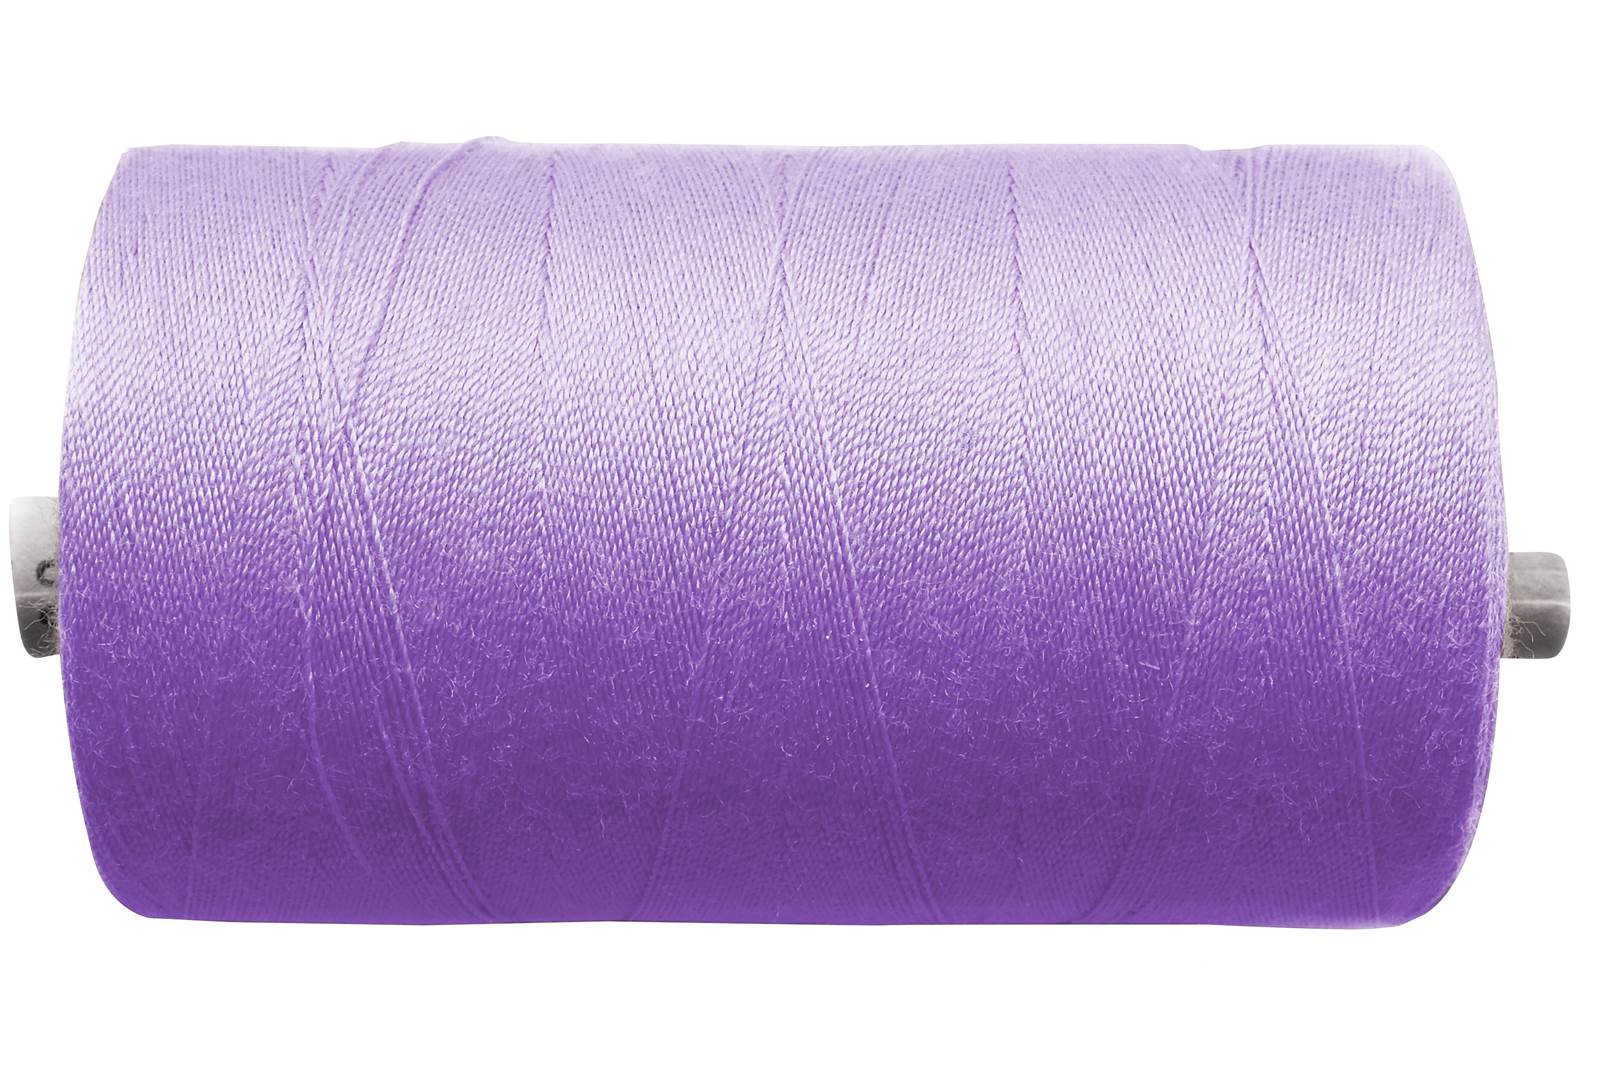 Sewing Yarn 100er - Lilac